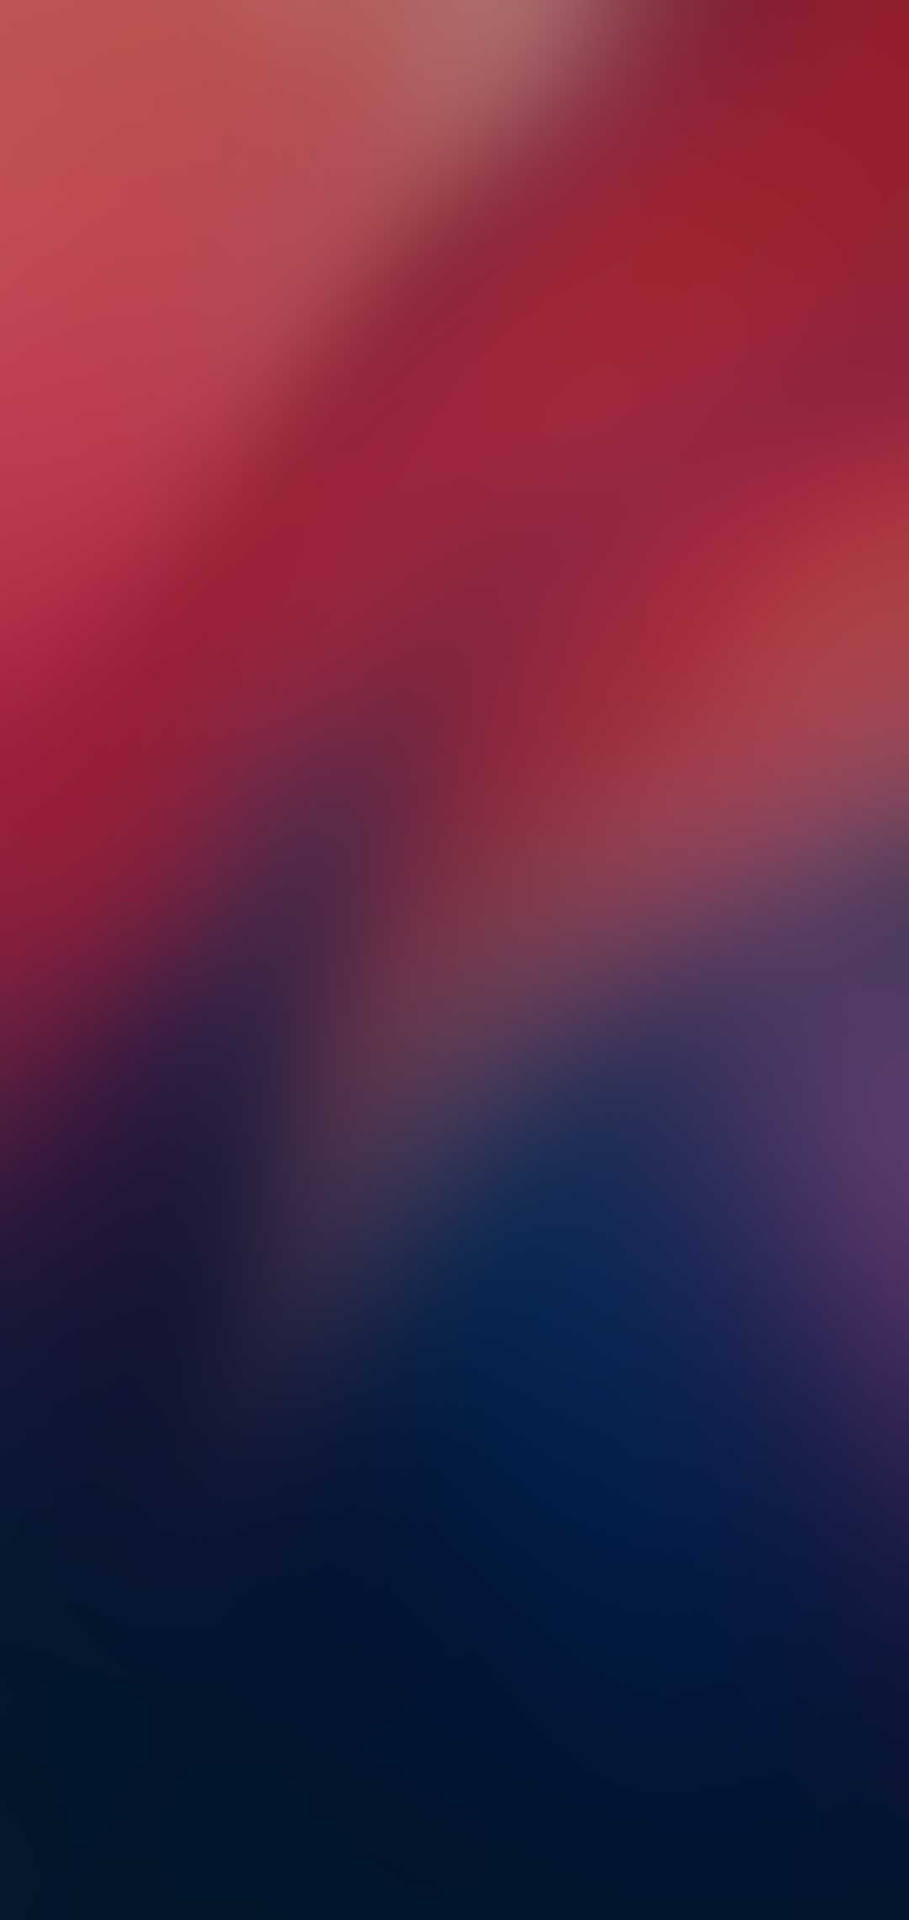 Sleek Redmi 9 With Red Blue Gradient Blur Background